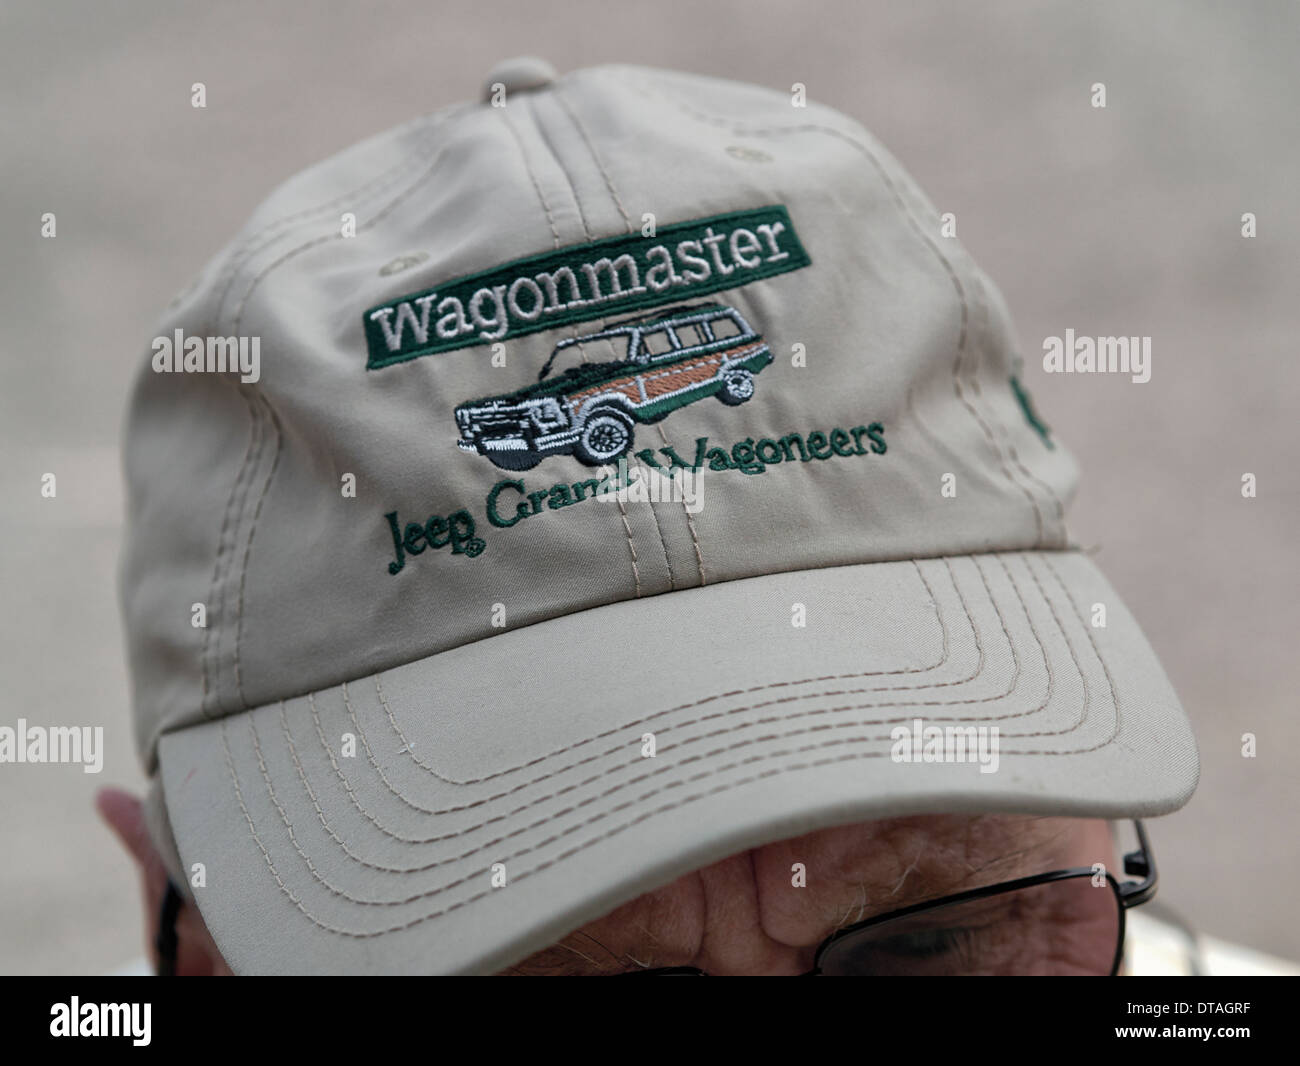 Mann trägt einen Baseball cap bestickt Jeep Grand Wagoneers. Fahrzeug-Werbemittel Stockfoto